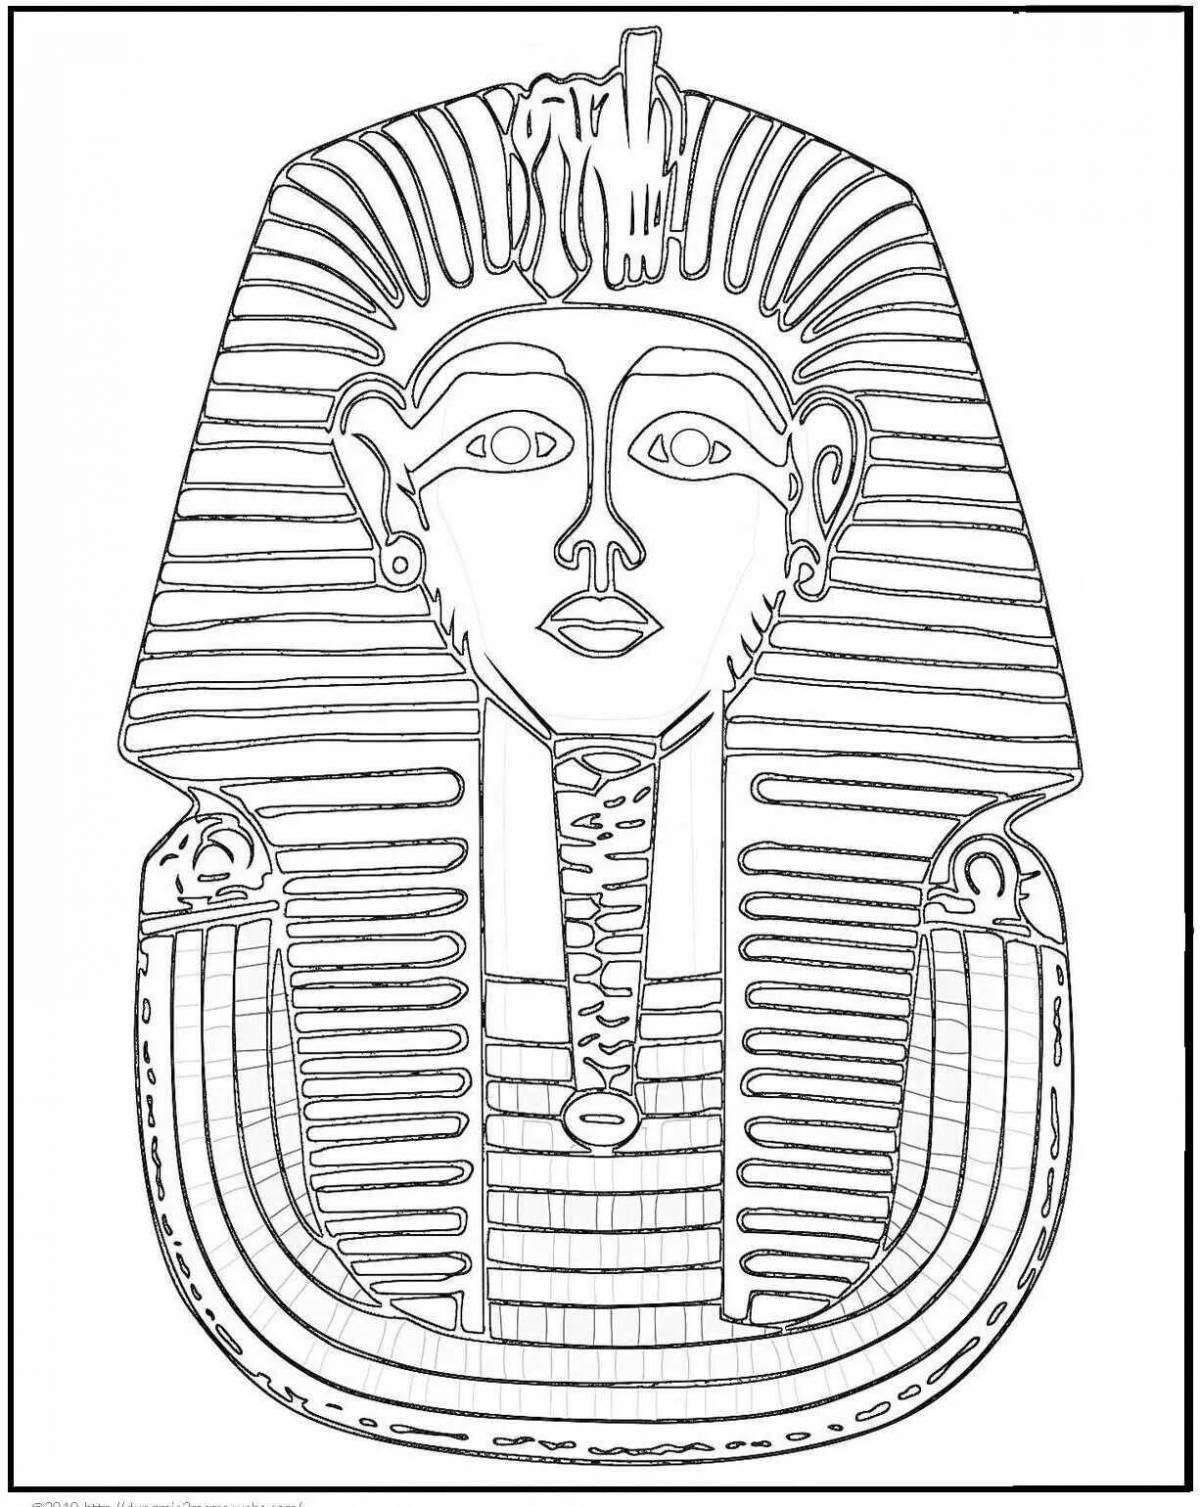 Раскраска элегантная маска фараона тутанхамона